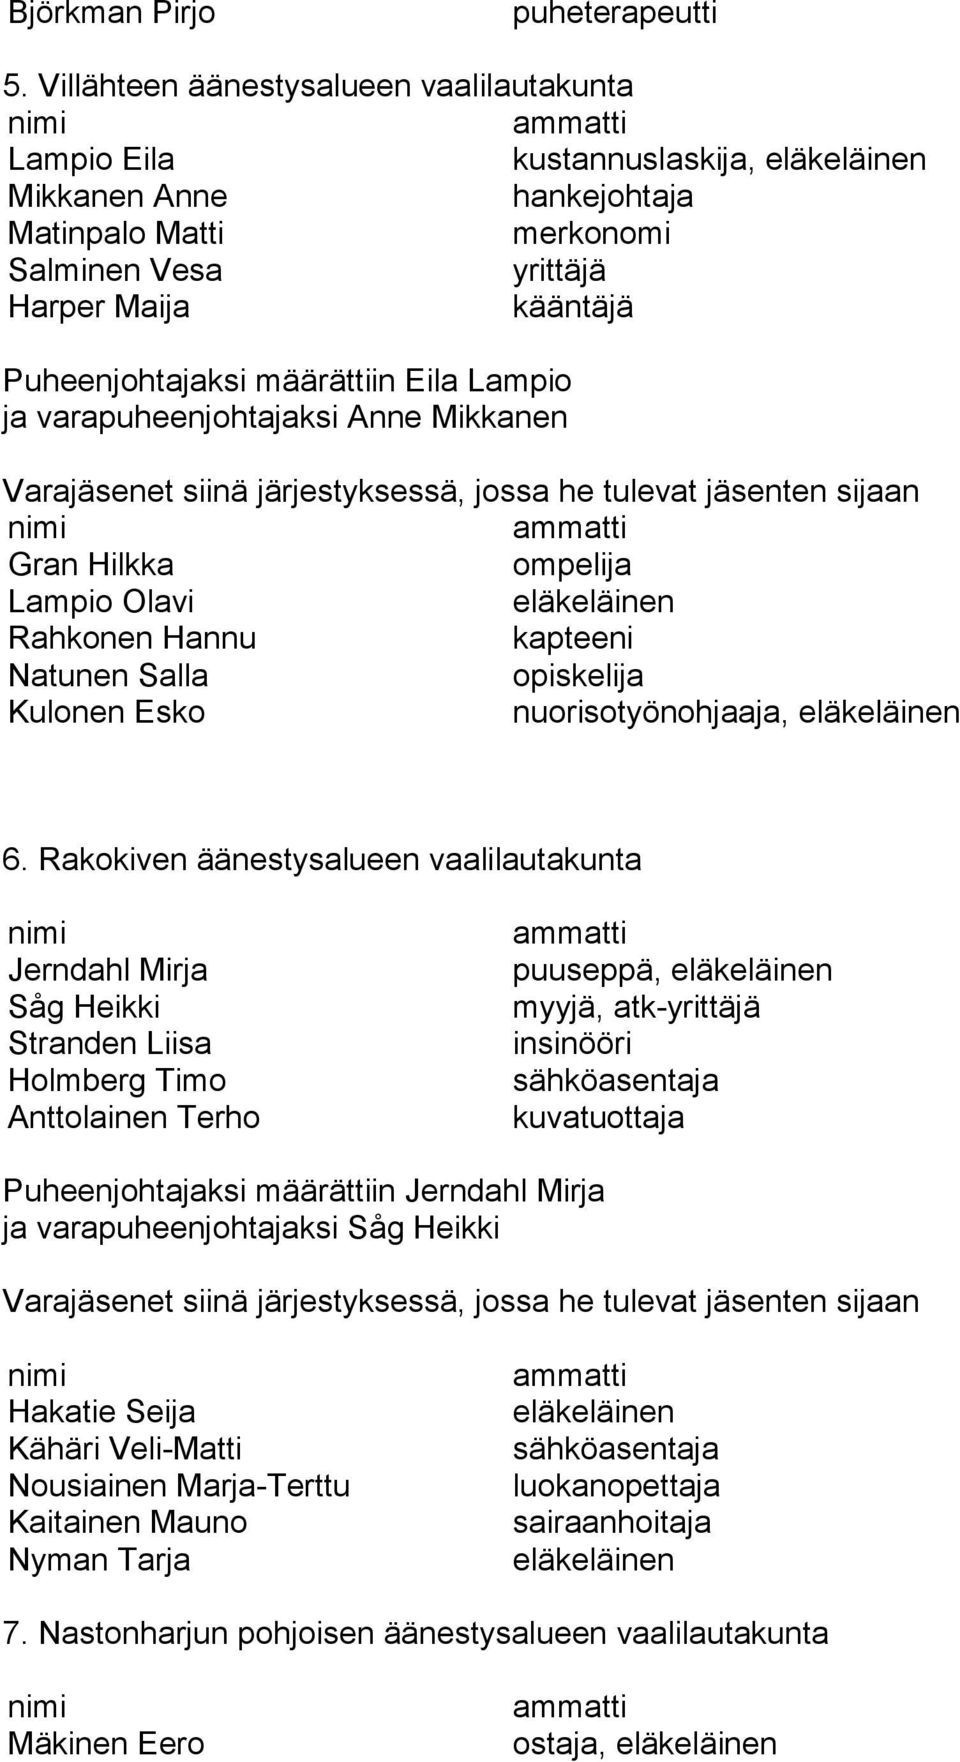 Lampio ja varapuheenjohtajaksi Anne Mikkanen Gran Hilkka ompelija Lampio Olavi Rahkonen Hannu kapteeni Natunen Salla opiskelija Kulonen Esko nuorisotyönohjaaja, 6.